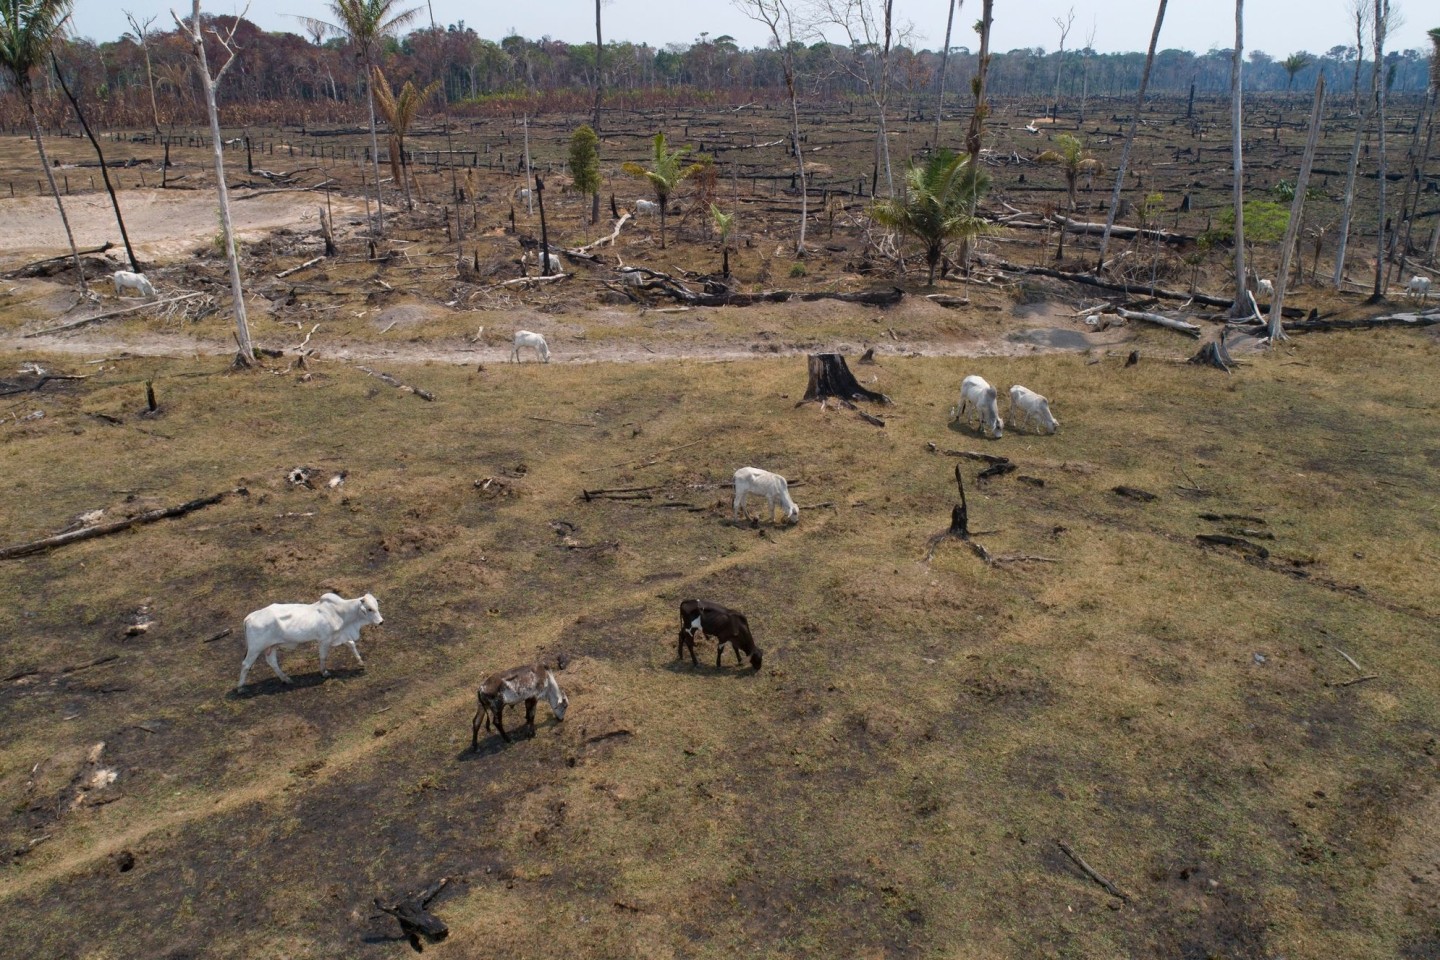 Rinder grasen auf einem verbrannten und abgeholzten Feld nahe Canutama in Brasilien.